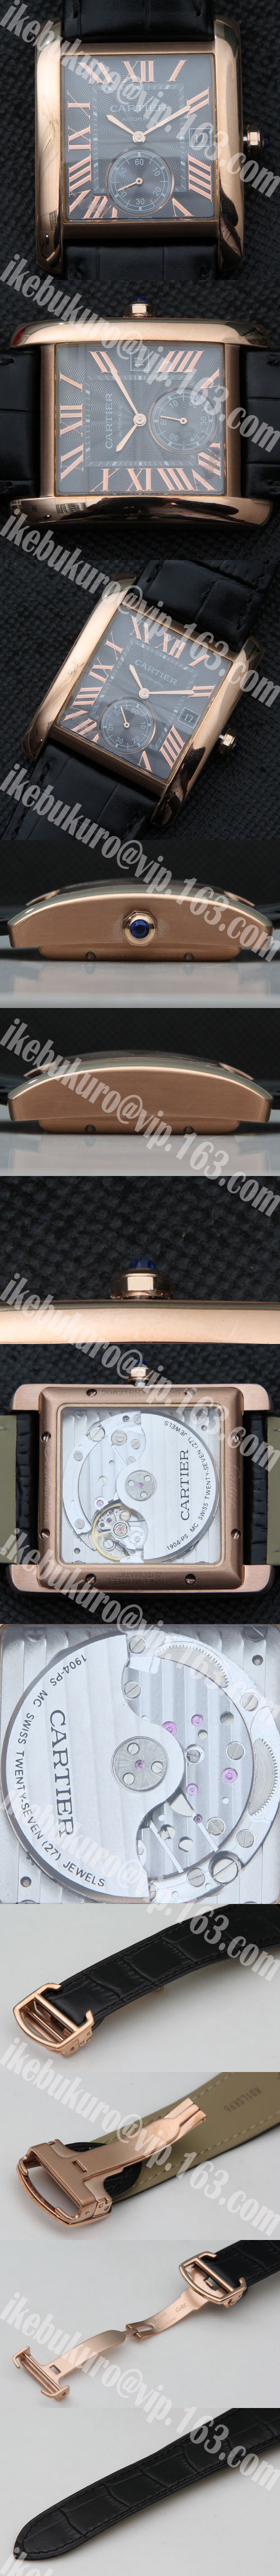 防水腕時計 カルティエ CARTIER タンクアングレーズ  Asain ETA28800振動 オートマティック(自動巻き) スモセコ デイト